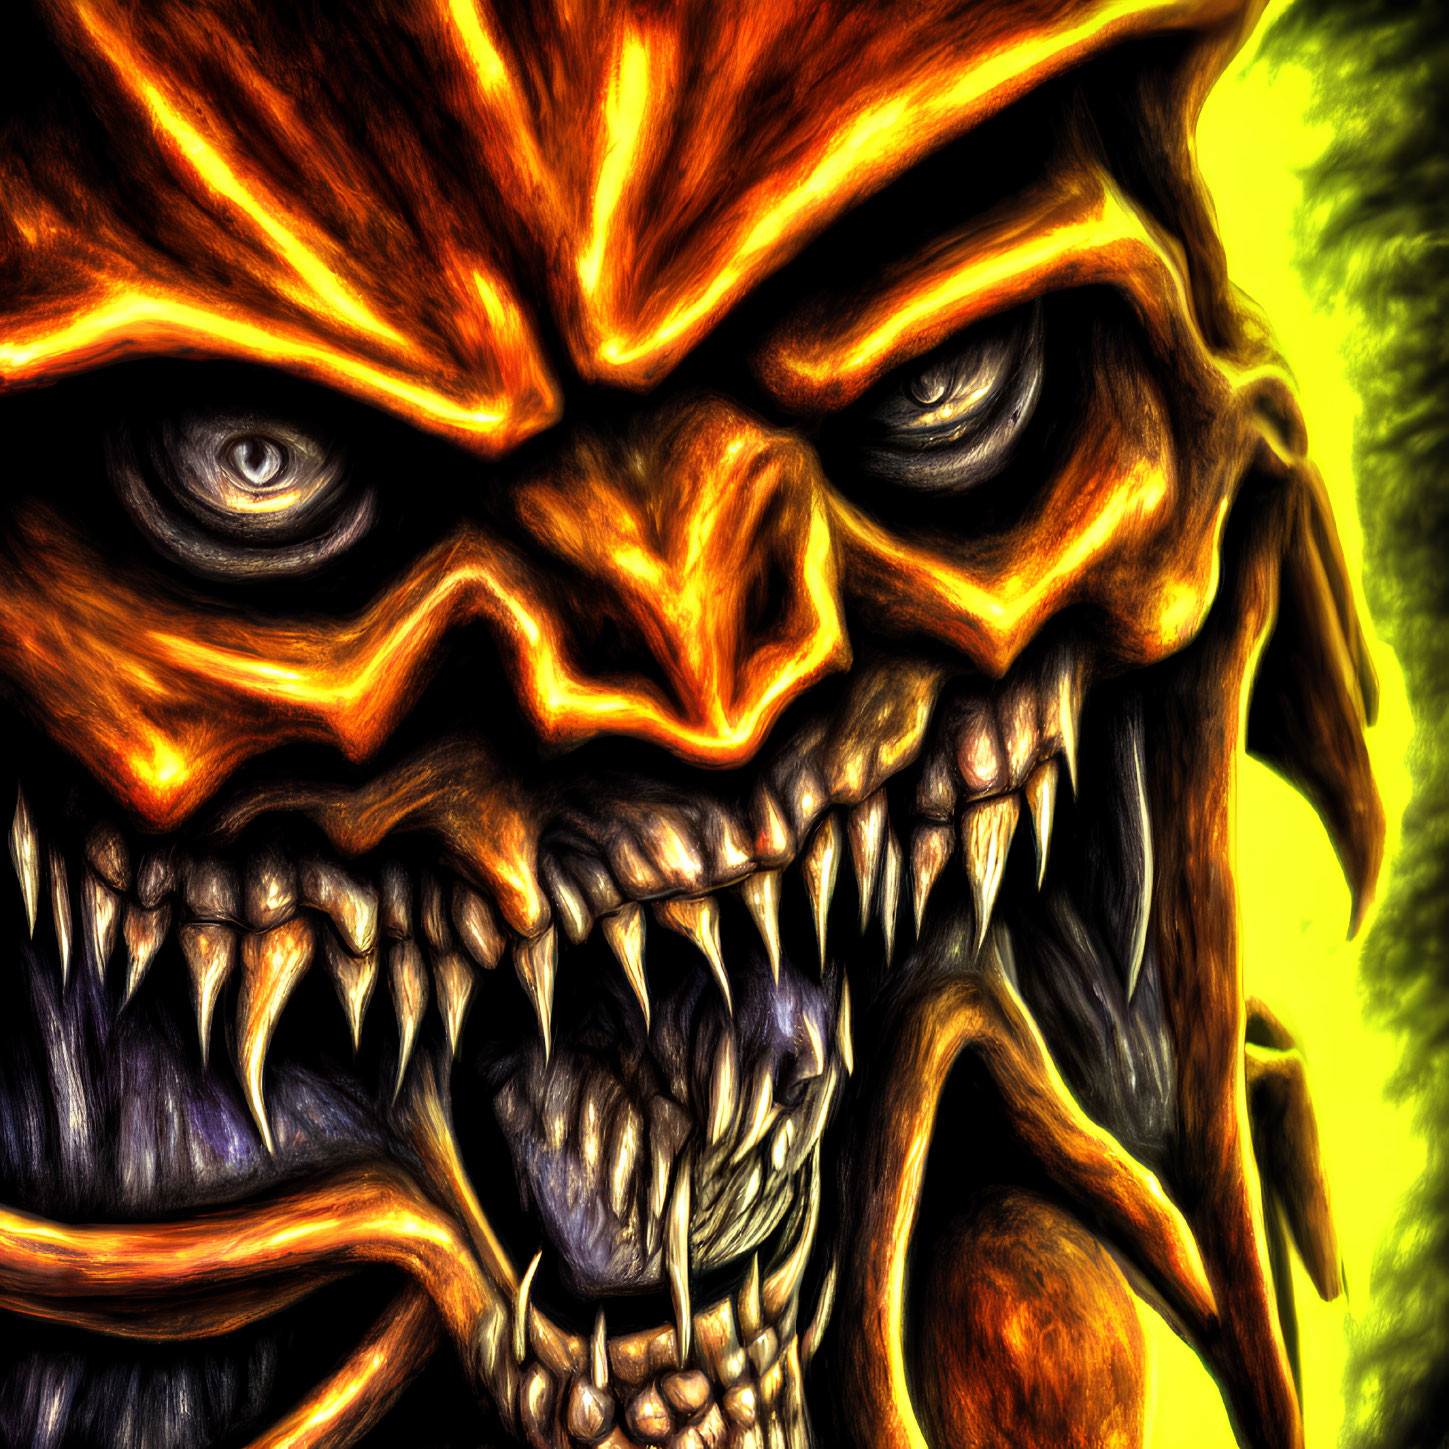 Fiery digital artwork: Snarling creature with sharp teeth & glowing eyes